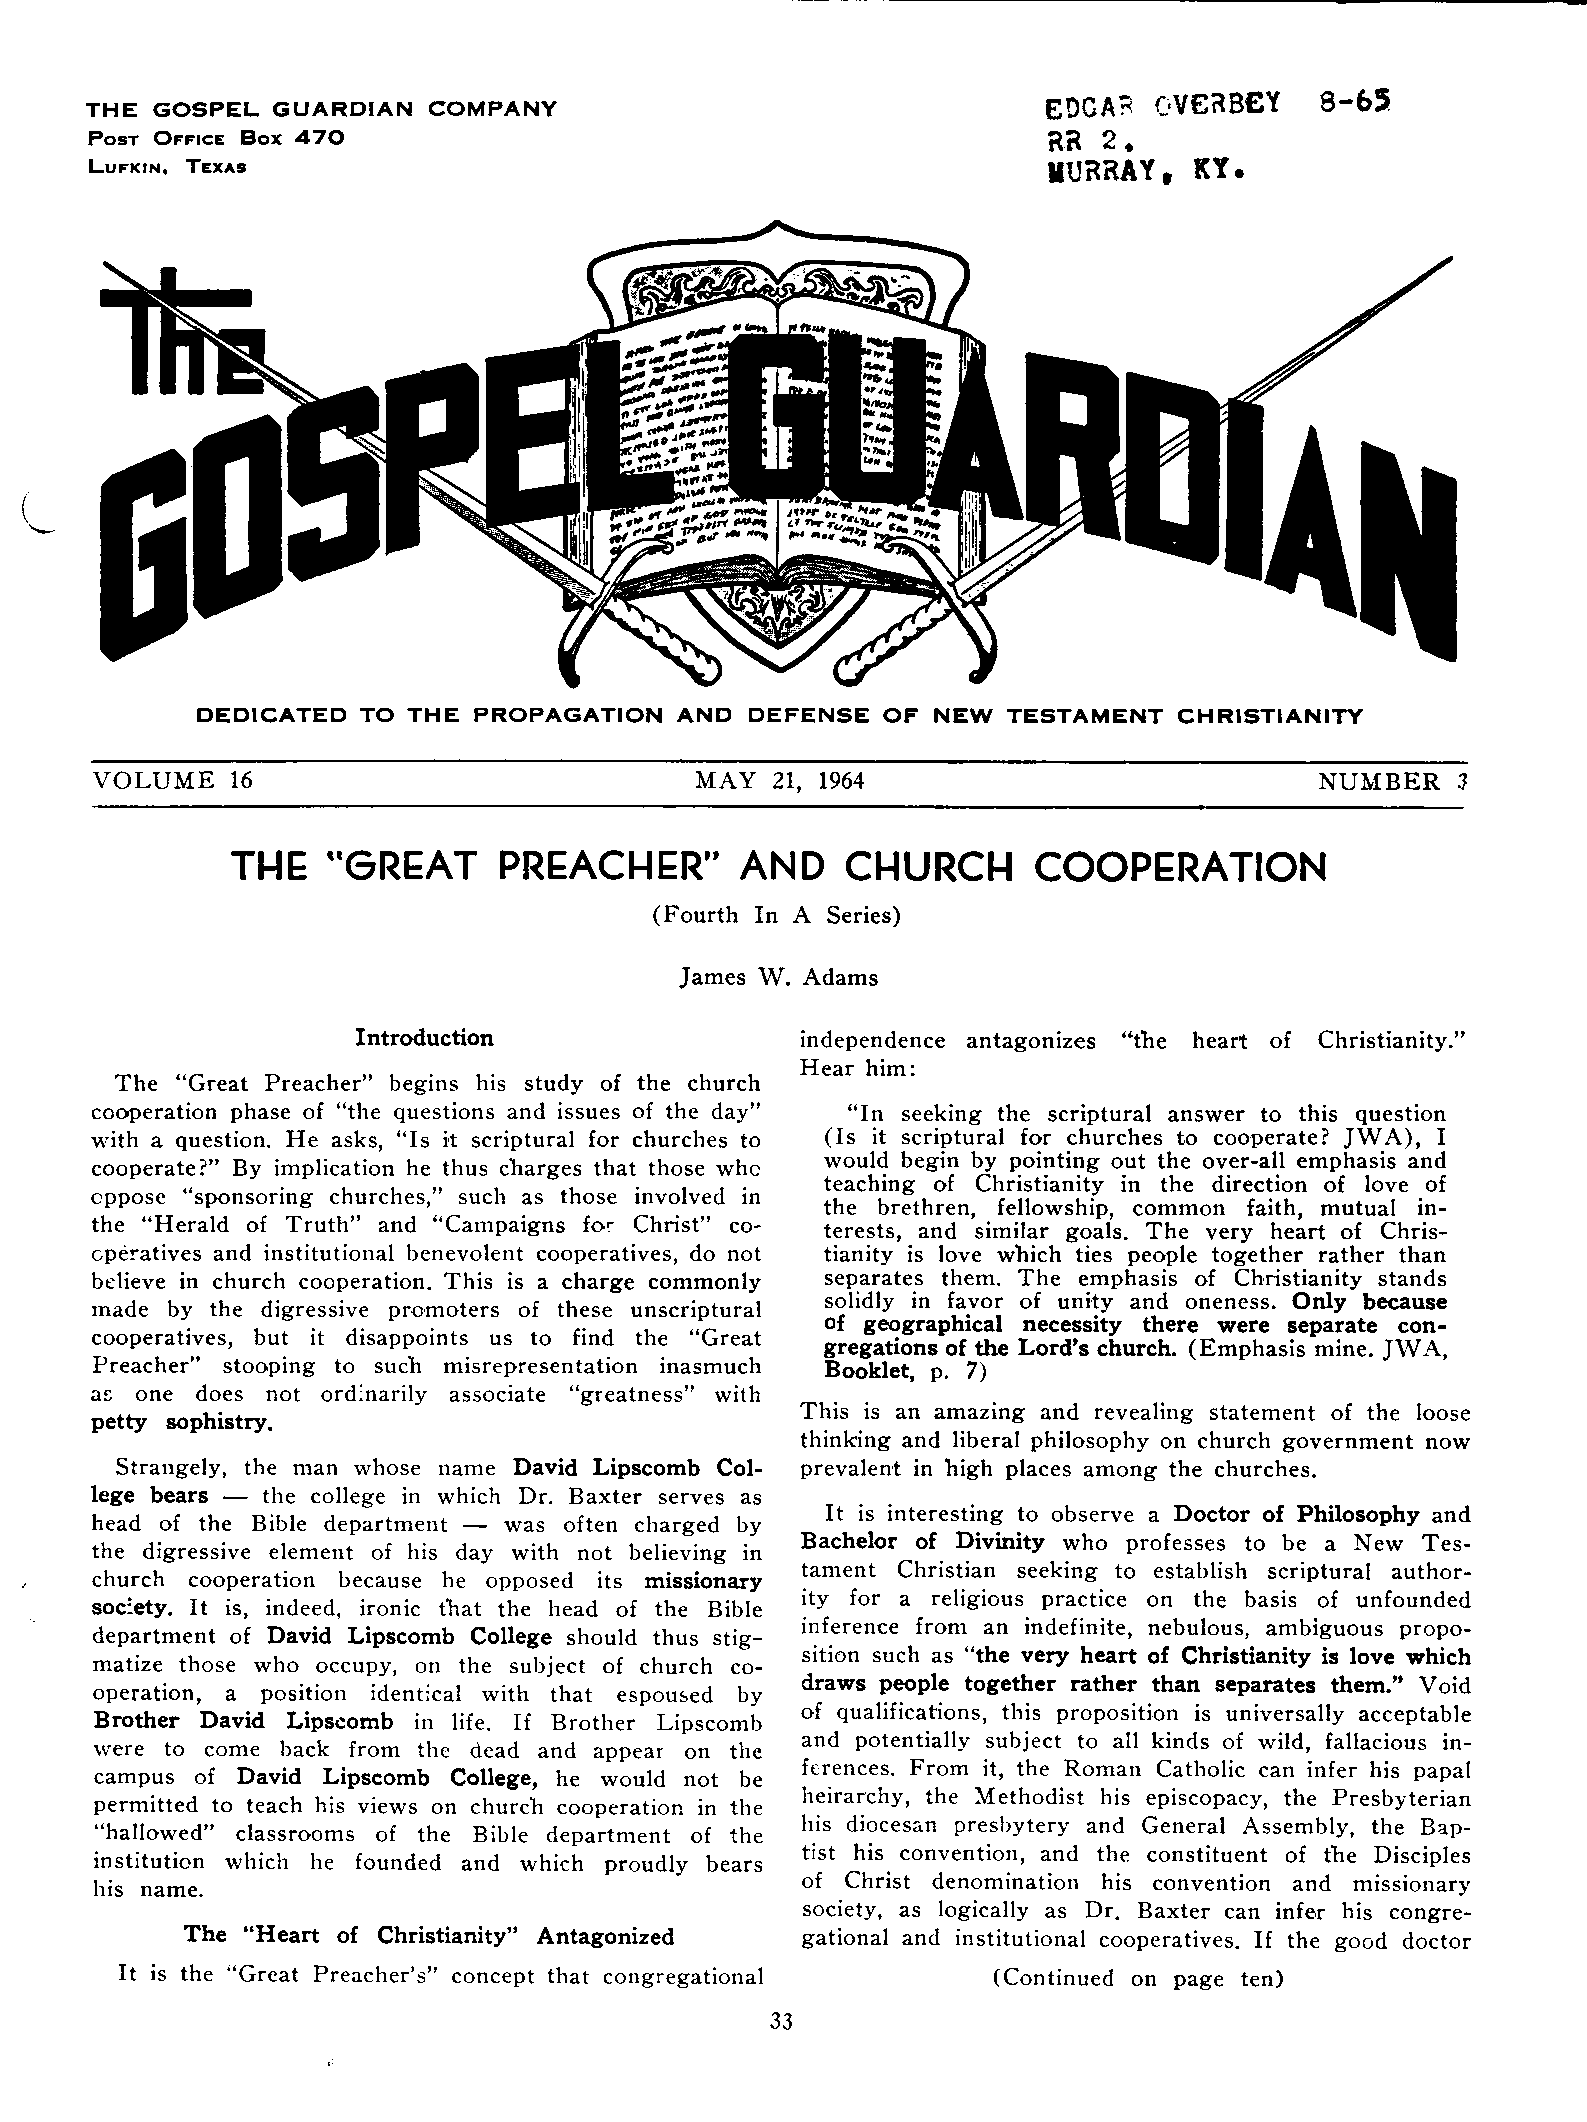 Gospel Guardian Original: Vol.16 No.3 Pg.1